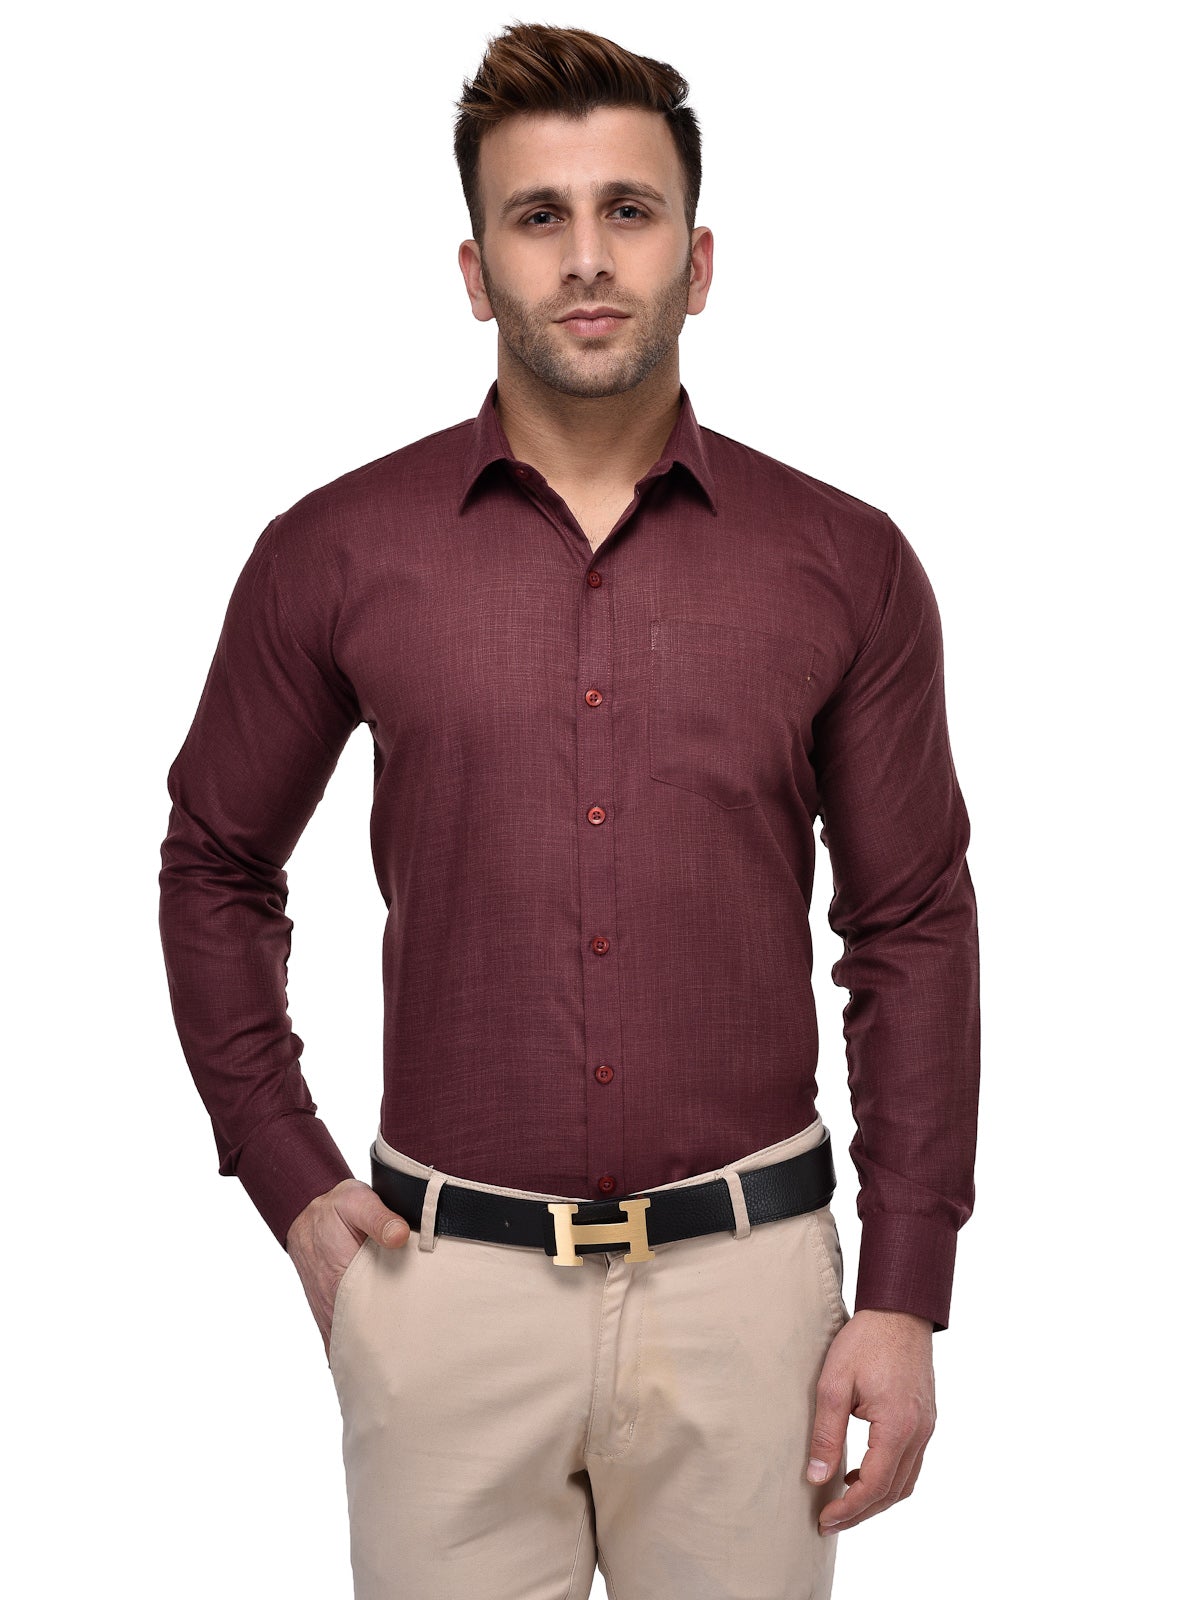 Men's Formal Maroon Shirt